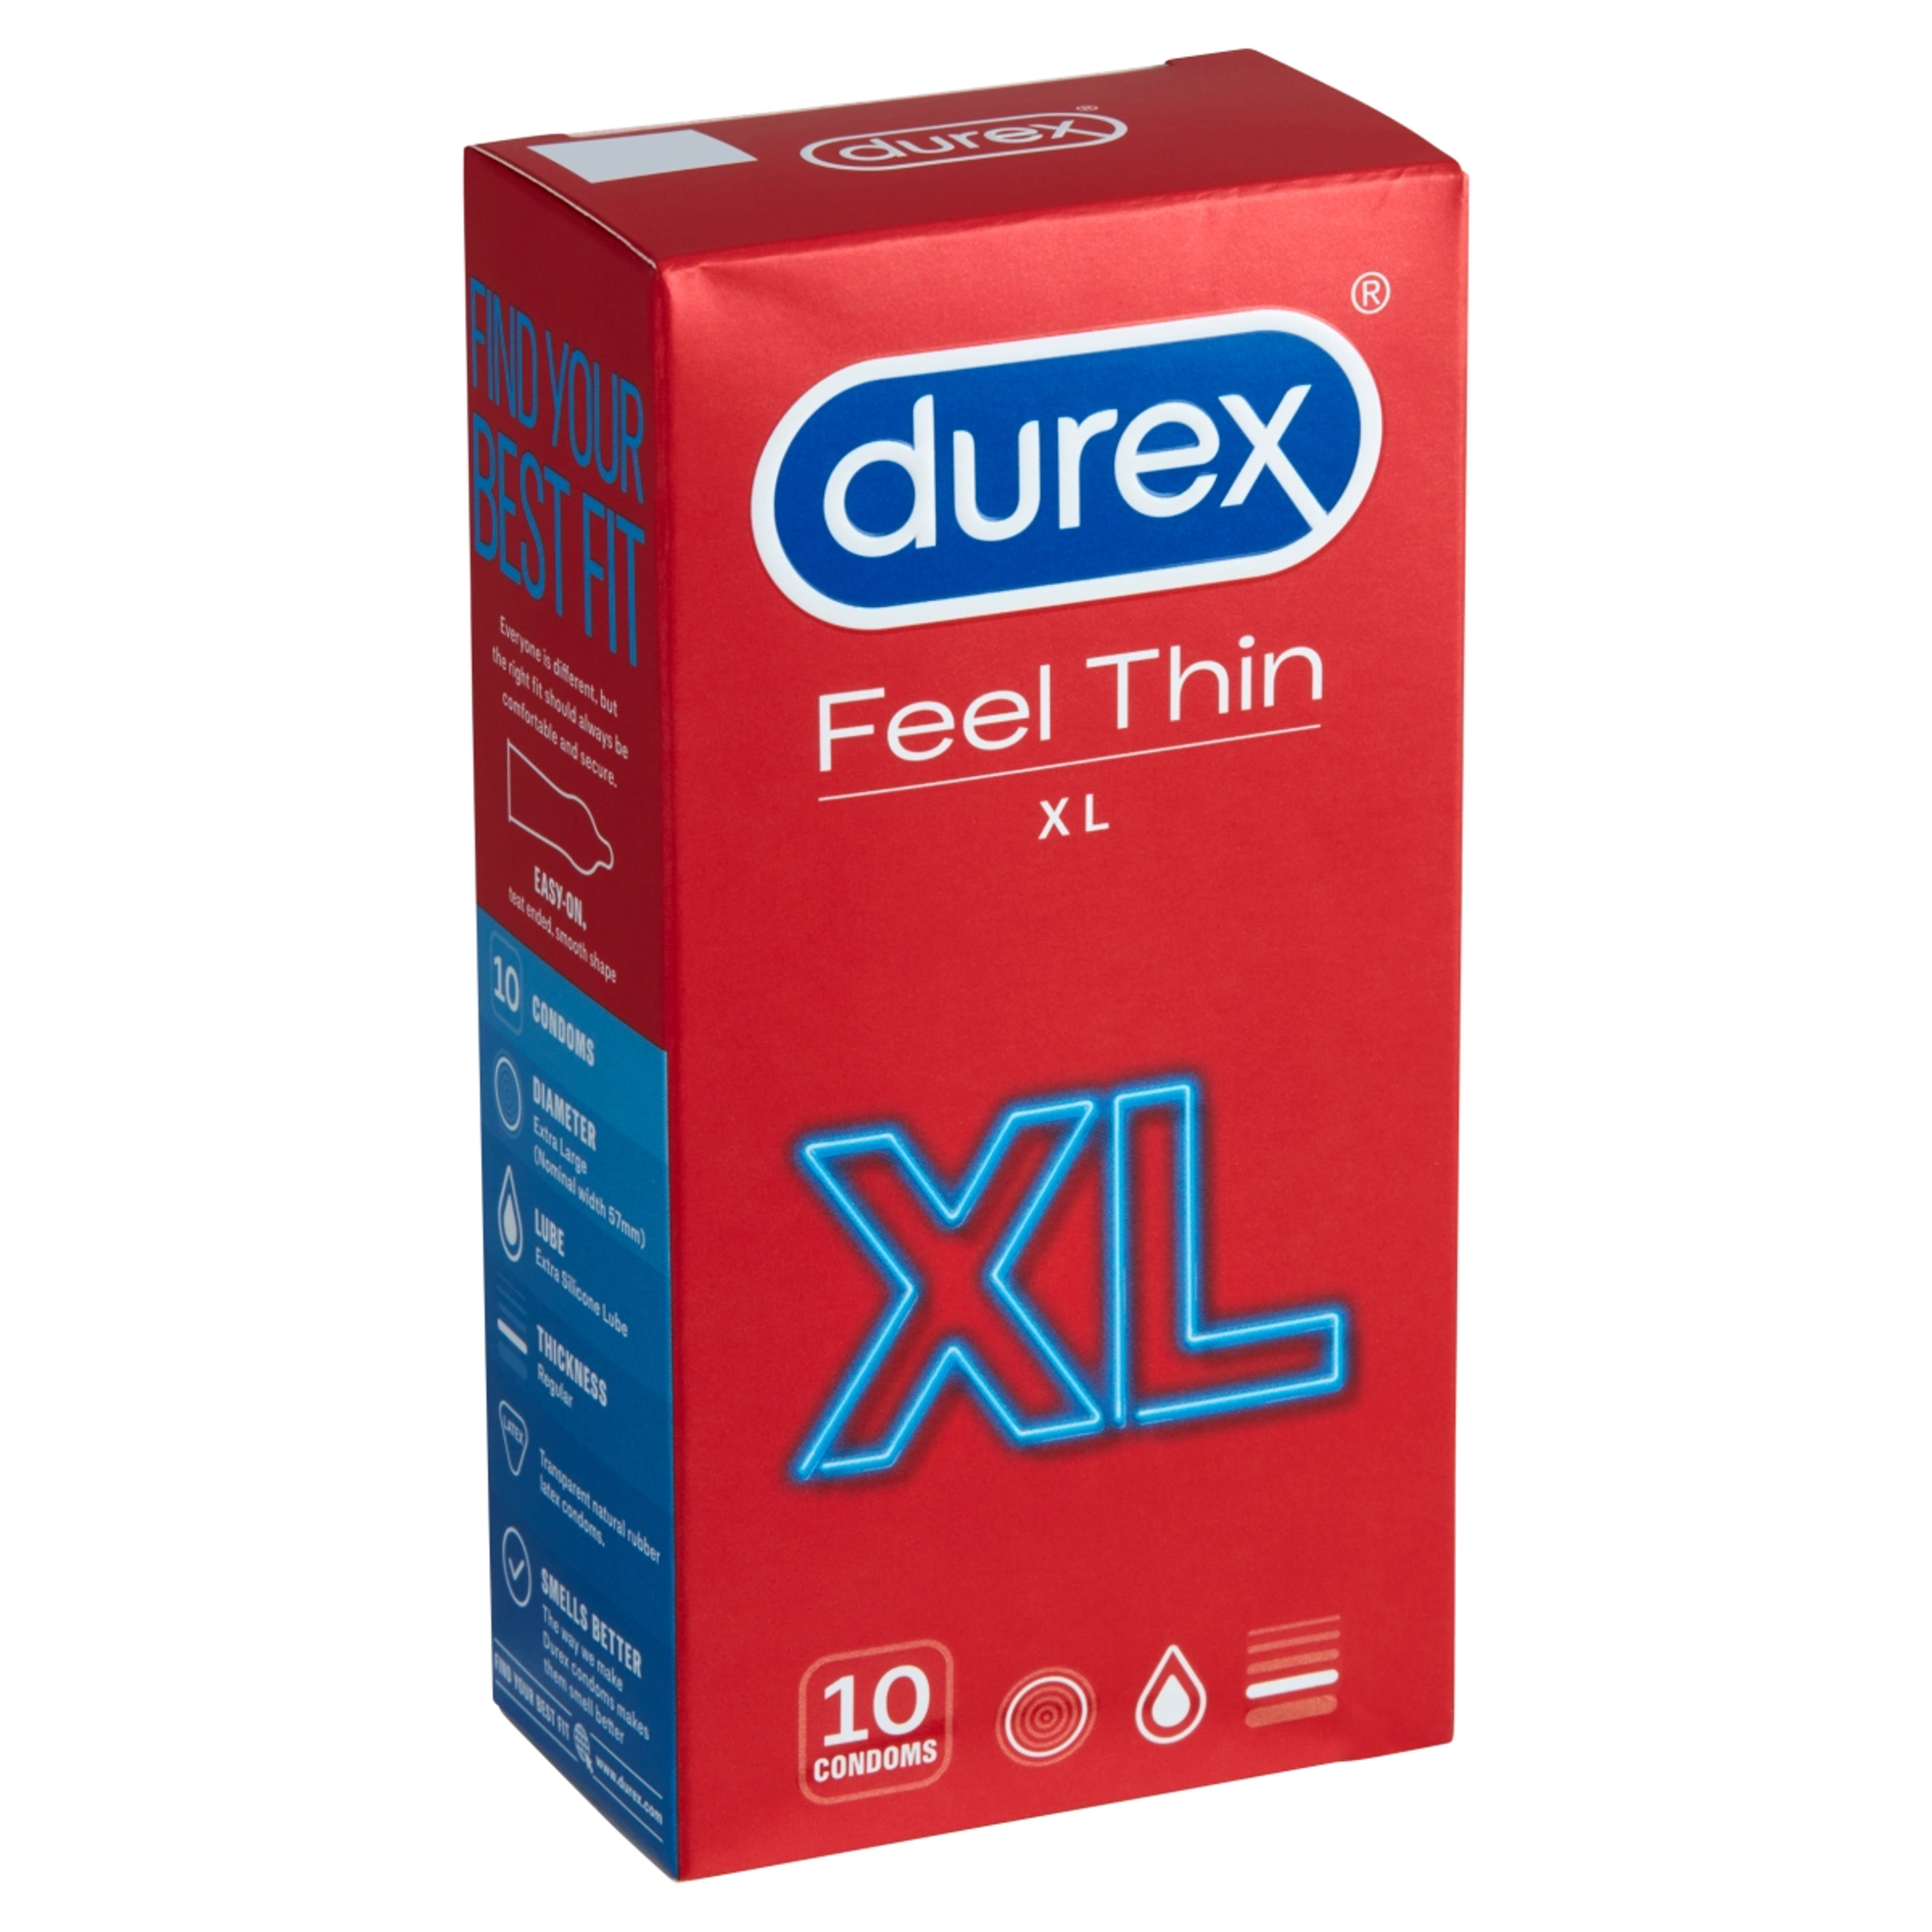 Durex óvszer feel thin xxl - 10 db-2